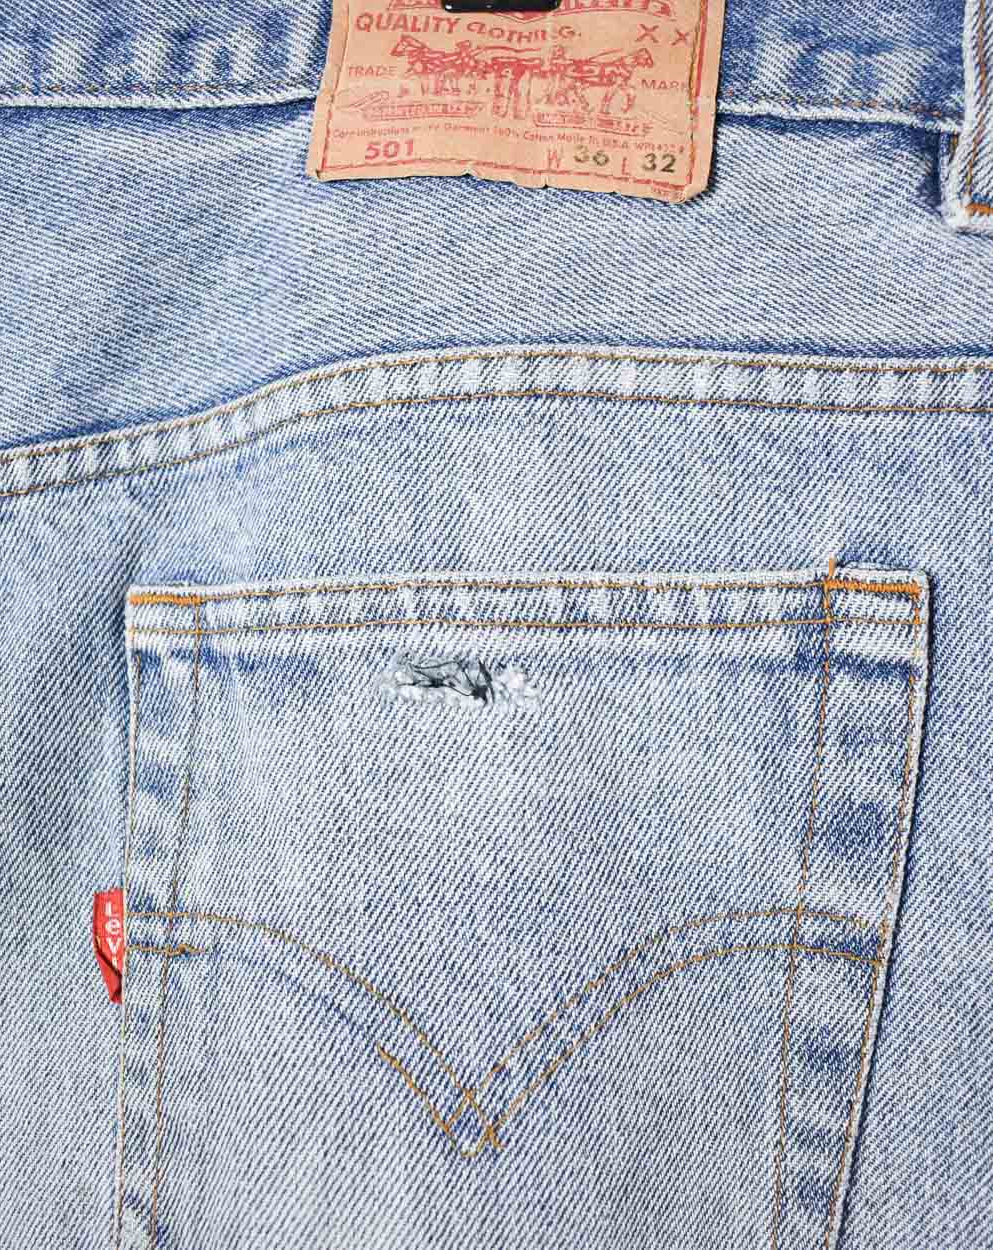 Blue Levi's 501 Jeans - W38 L27